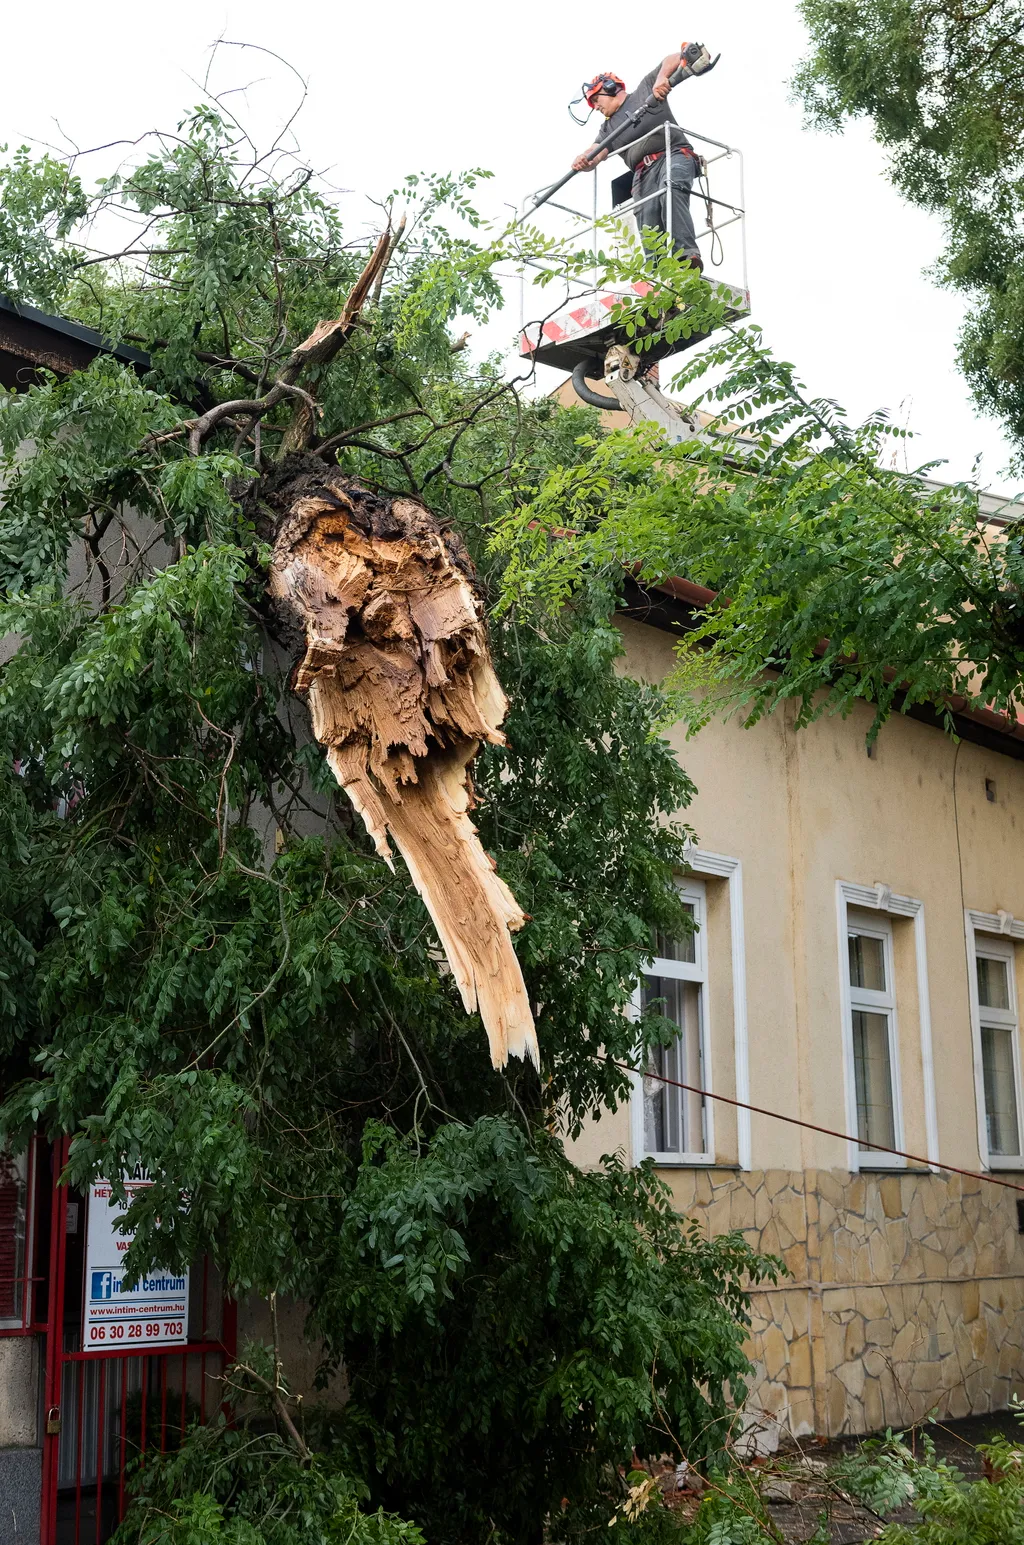 Nyíregyháza, 2021. augusztus 1.
Épületre borult fákat távolítanak el vihar után a Nyíregyházán, a Szent István utcában 2021. augusztus 1-jén.
MTI/Balázs Attila 